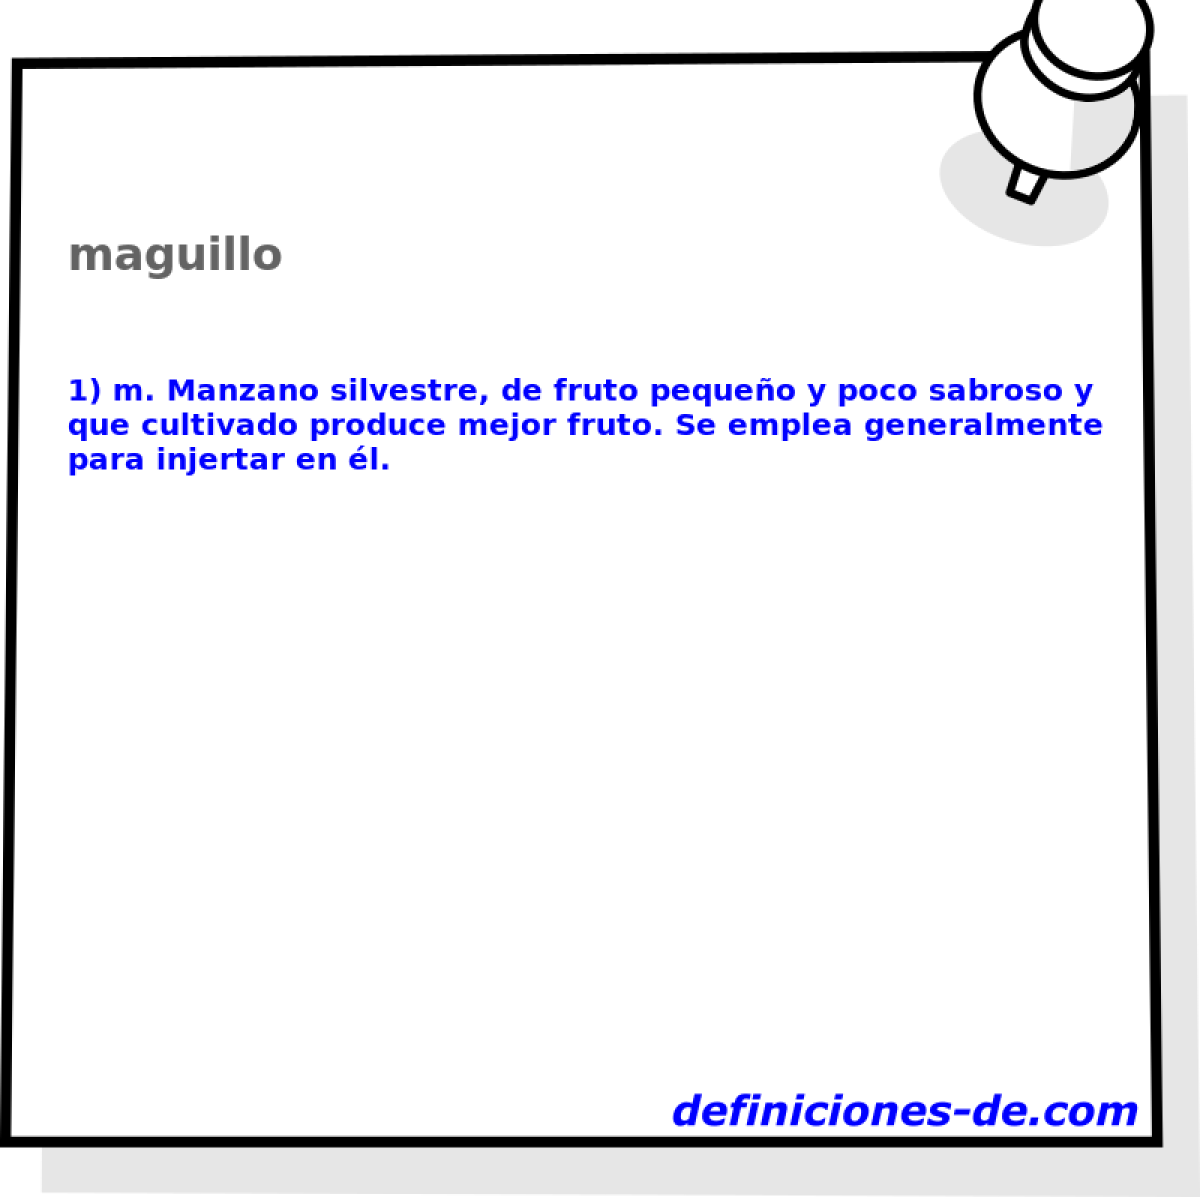 maguillo 